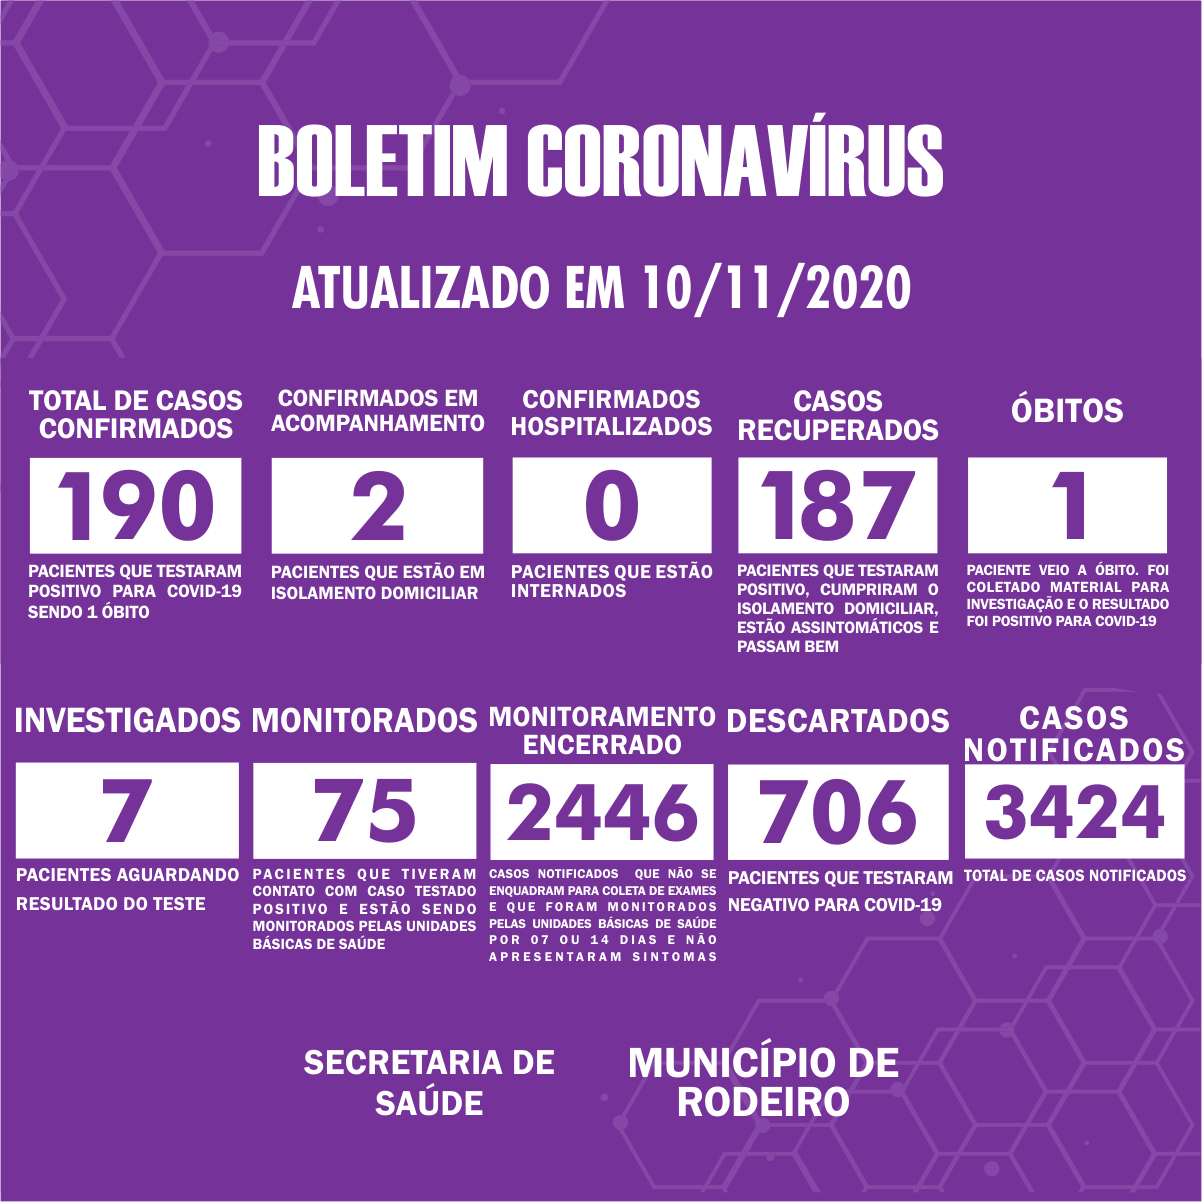 Boletim Epidemiológico do Município de Rodeiro sobre coronavírus, atualizado em 10/11/2020